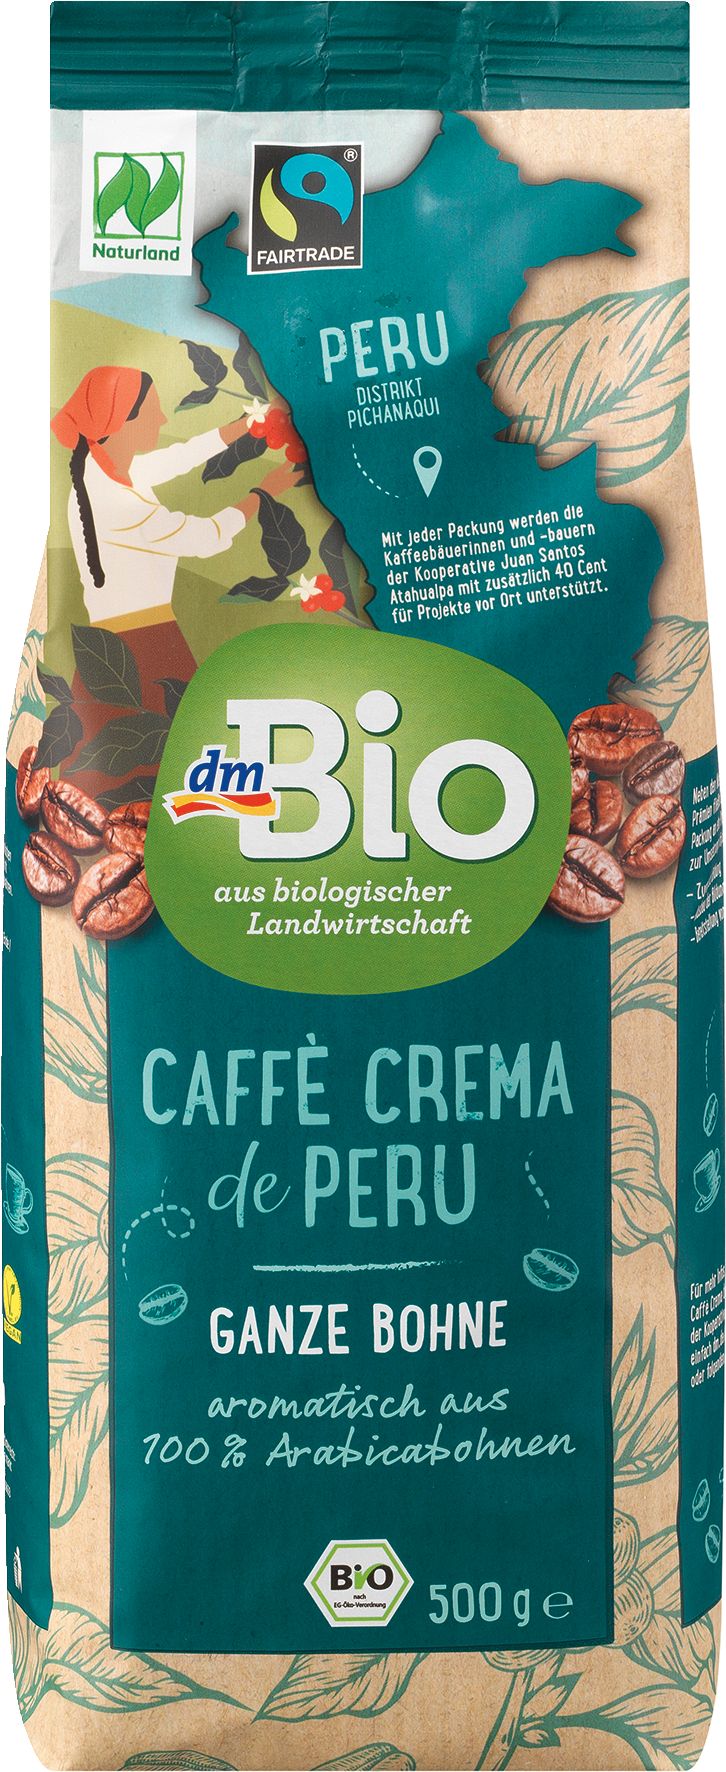 dm_Bio_Cafe_Crema_de_Peru